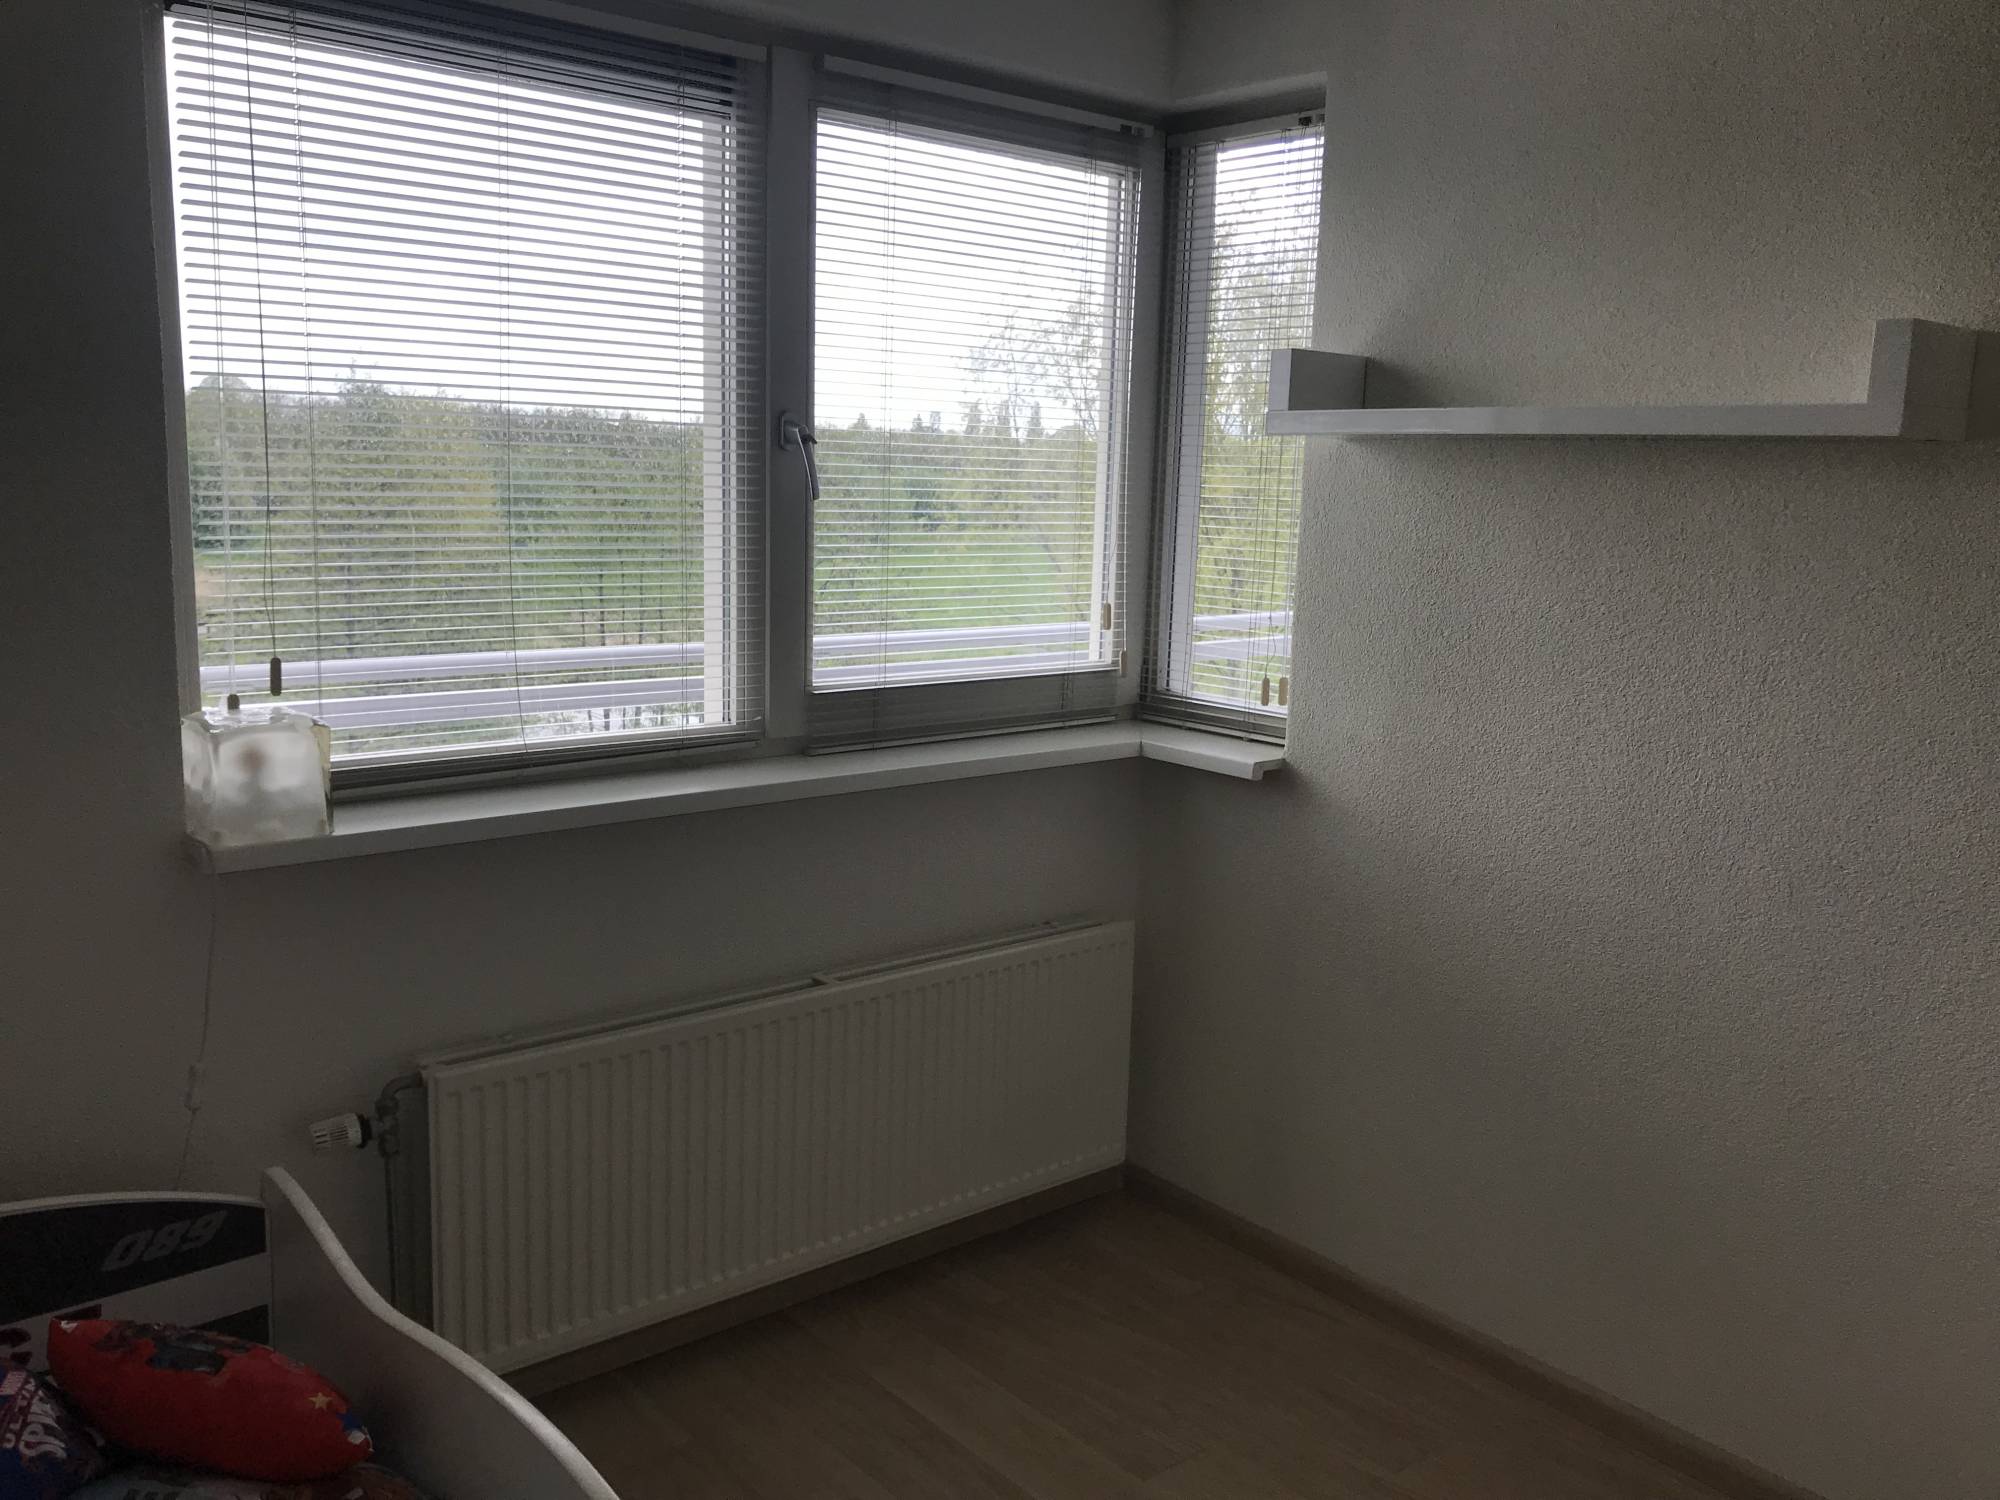 Bekijk foto 1/15 van apartment in Amstelveen